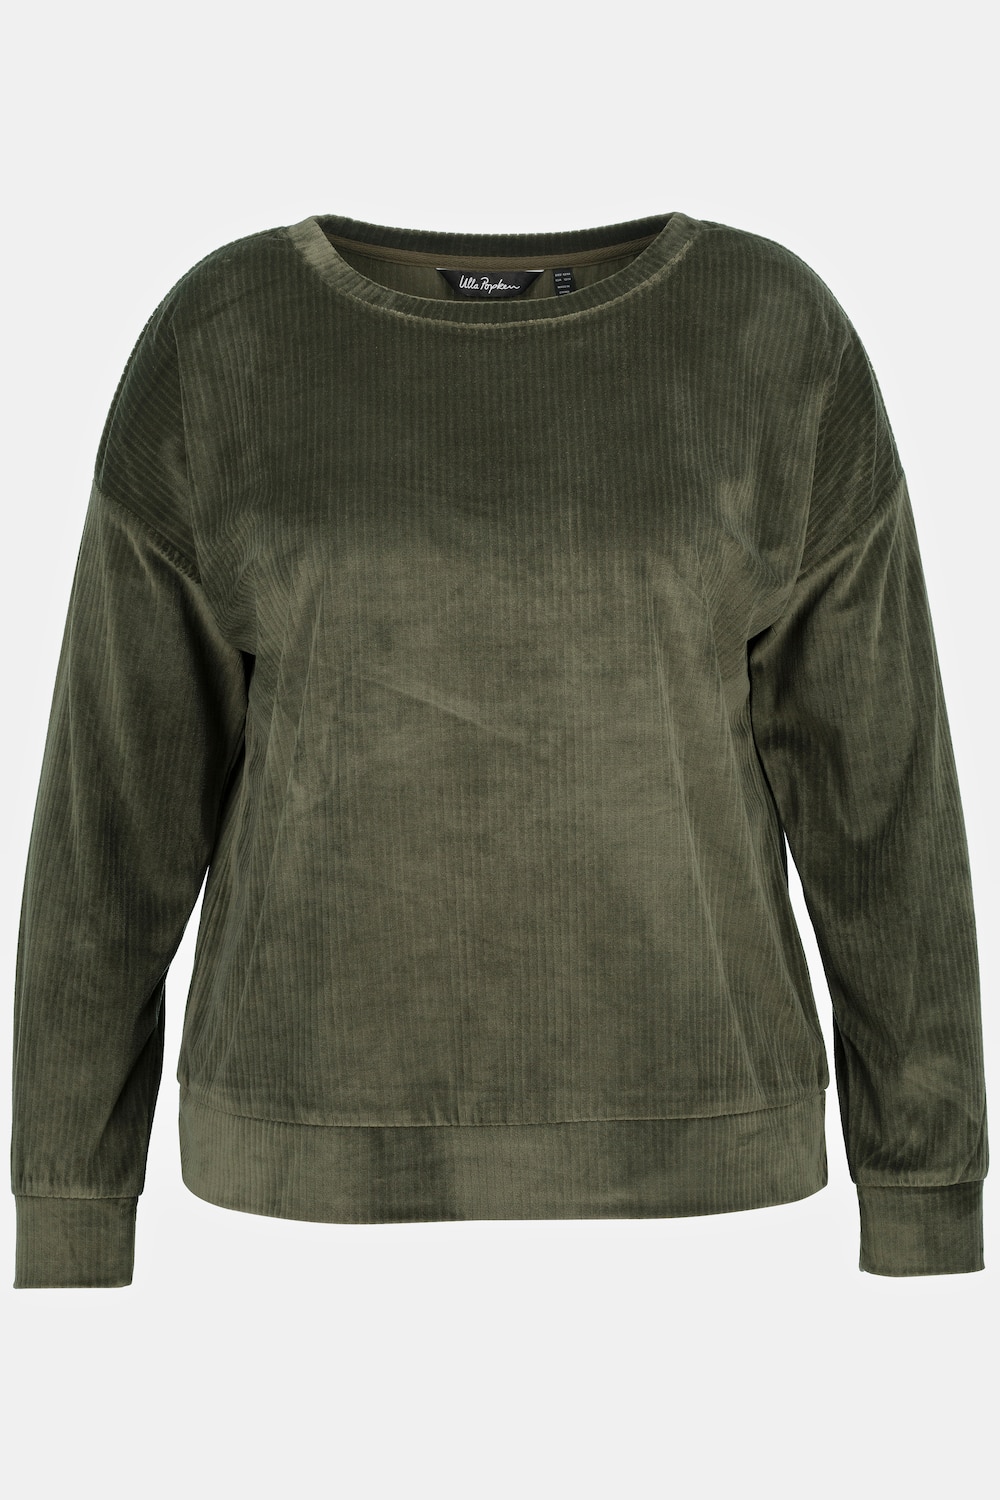 Grote Maten homewear sweatshirt, Dames, groen, Maat: 54/56, Polyester, Ulla Popken